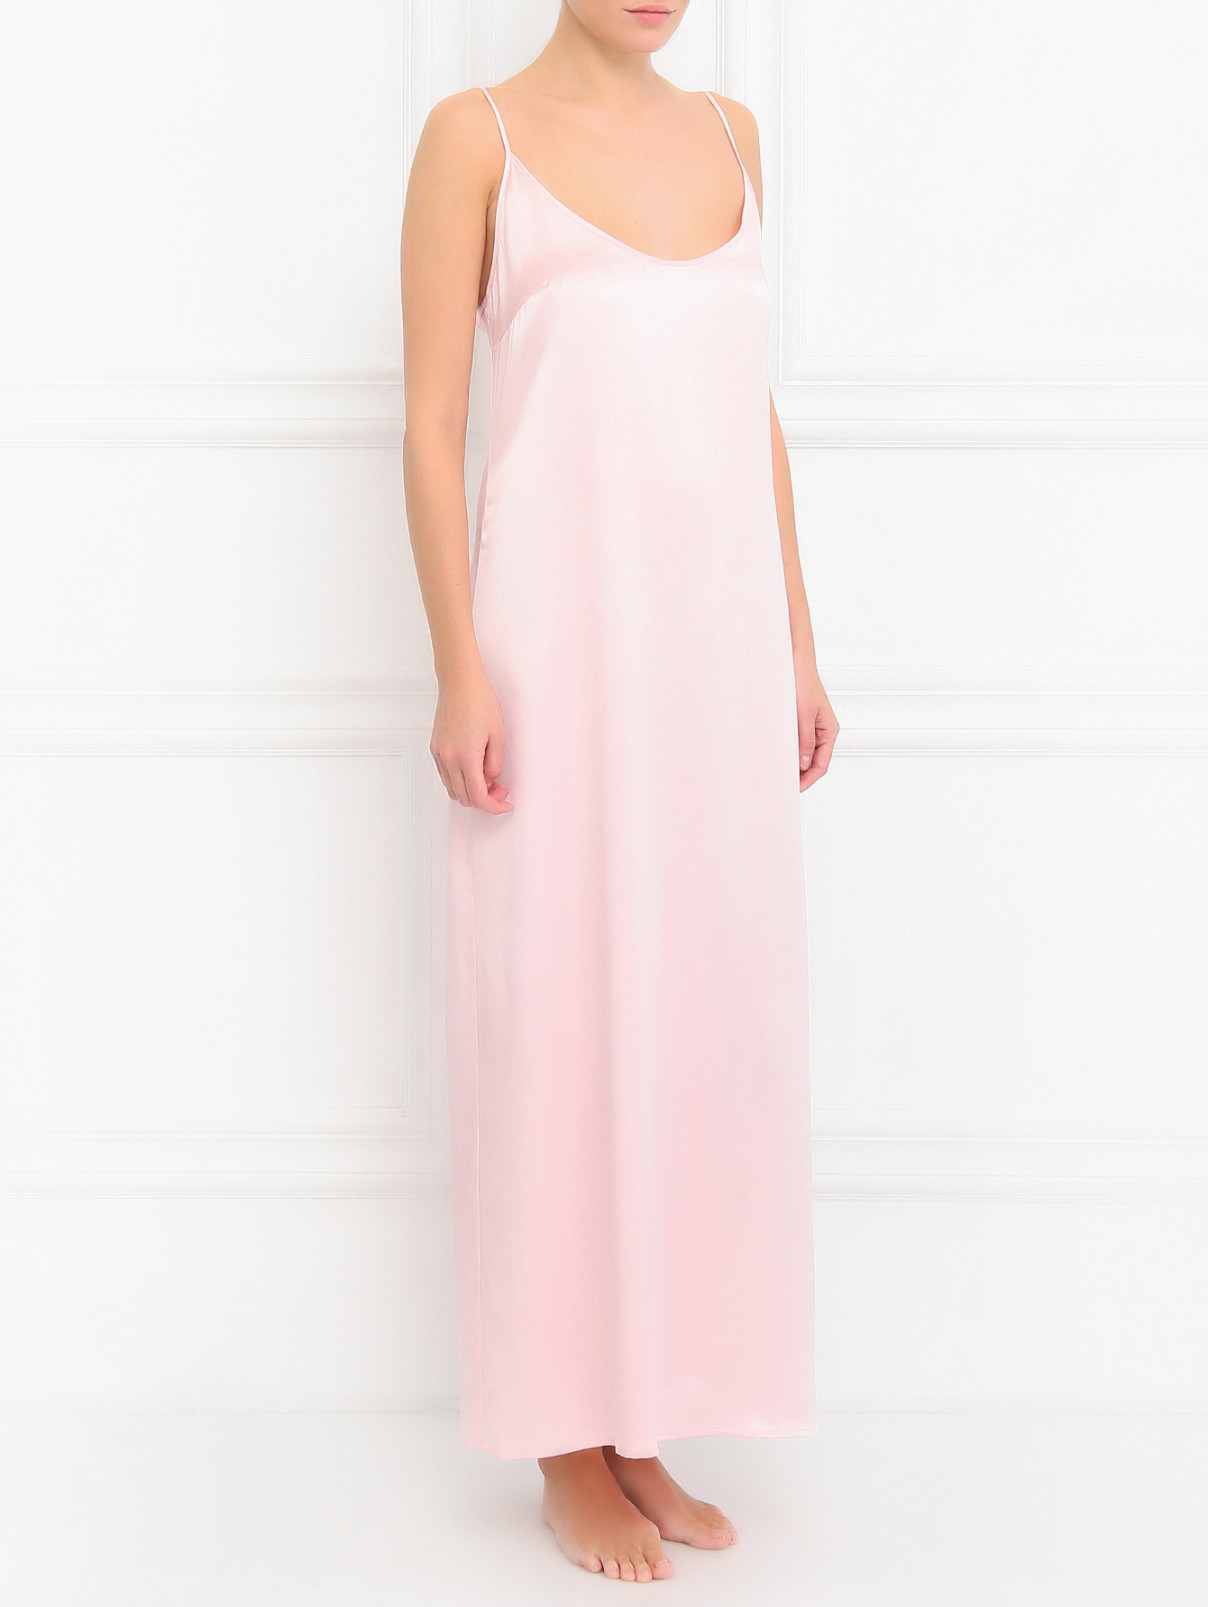 Сорочка из шелка La Perla  –  Модель Общий вид  – Цвет:  Розовый